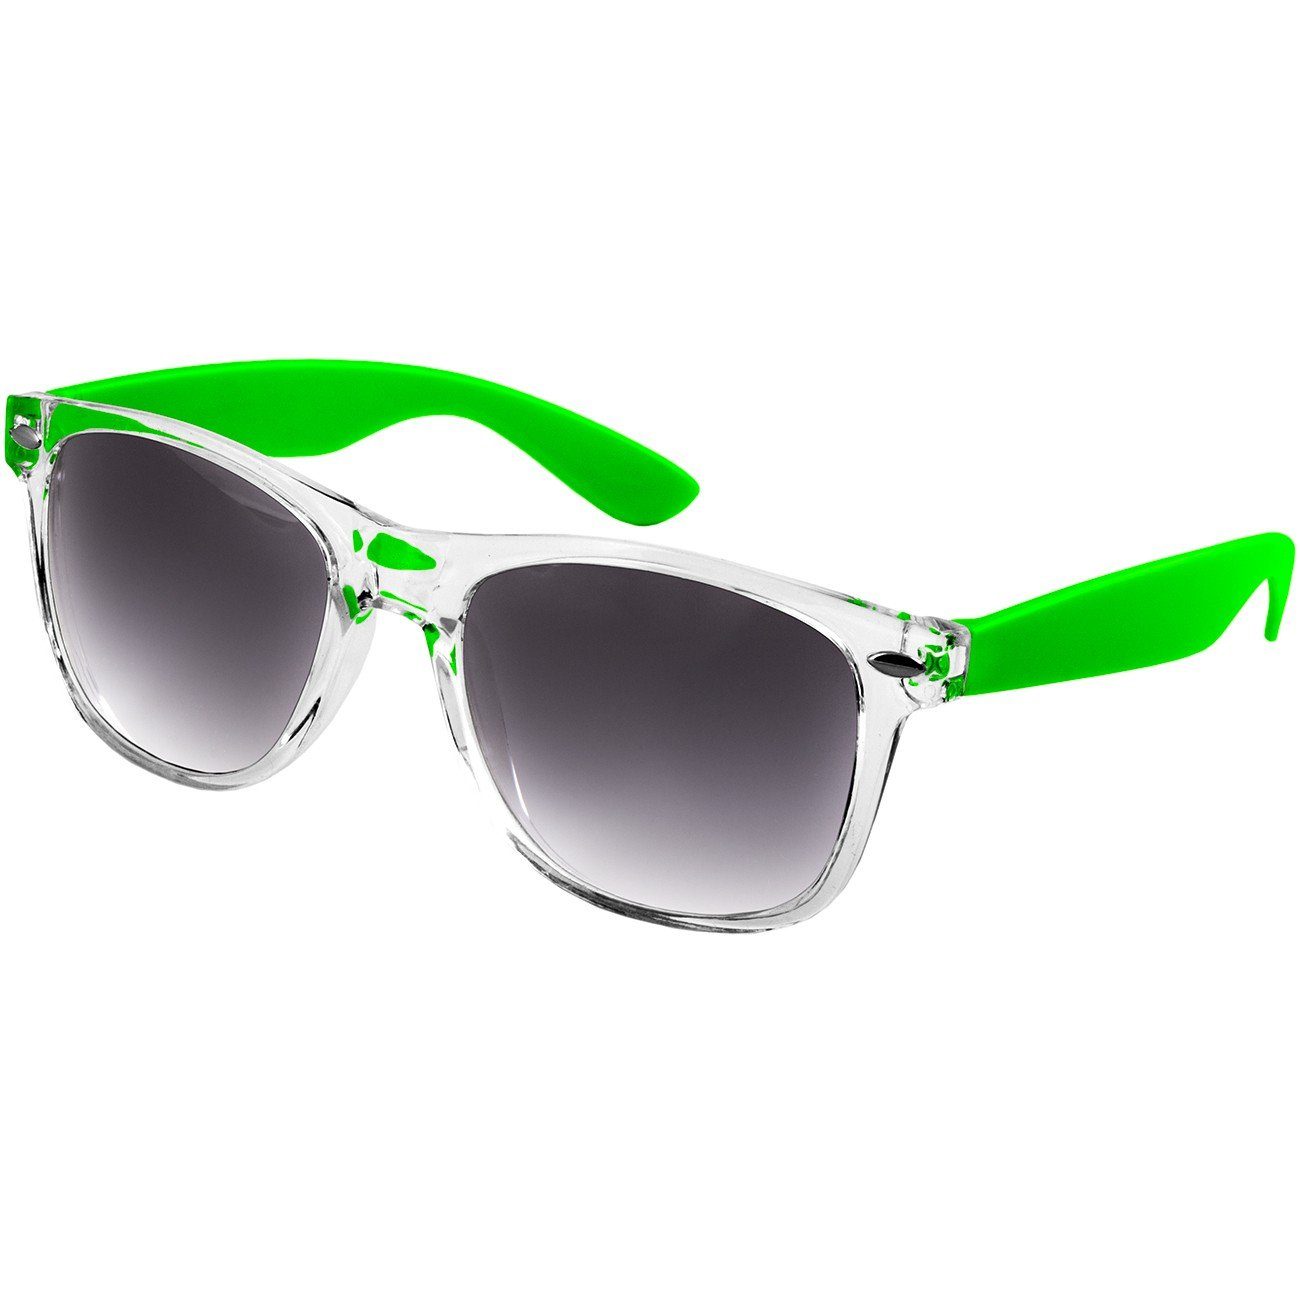 Caspar Sonnenbrille SG017 Damen RETRO Designbrille grün / schwarz getönt